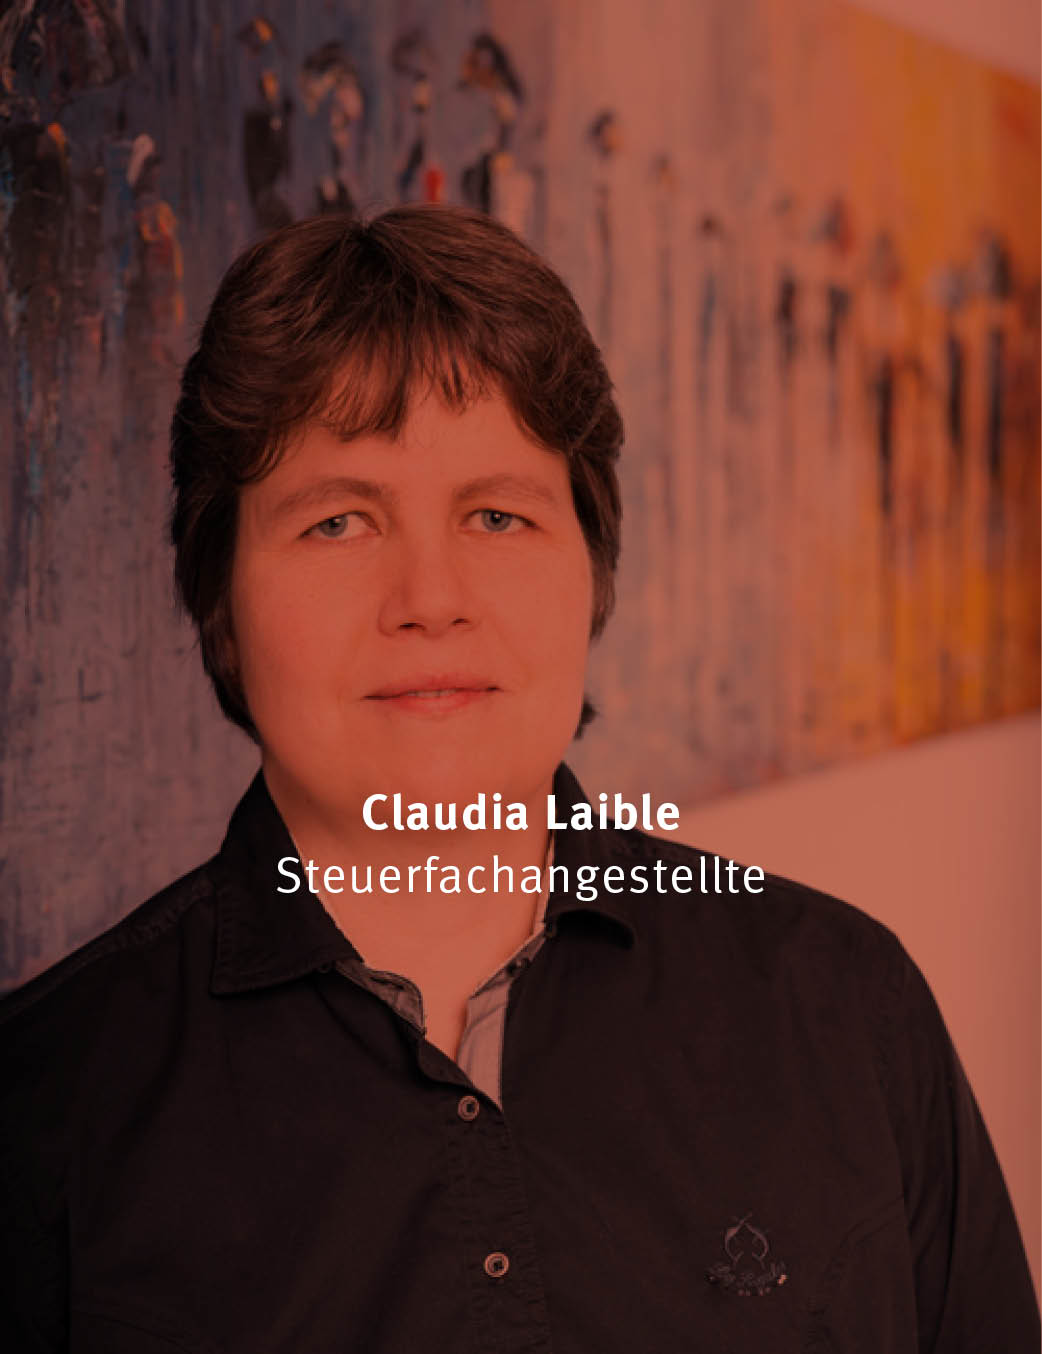 Claudia Laible Steuerfachangestellte Steuerberater Langenau Klaiber, Lotspeich, Kneer, Anhorn, Stiele, Partnerschaft mbB, Steuer, Langenau